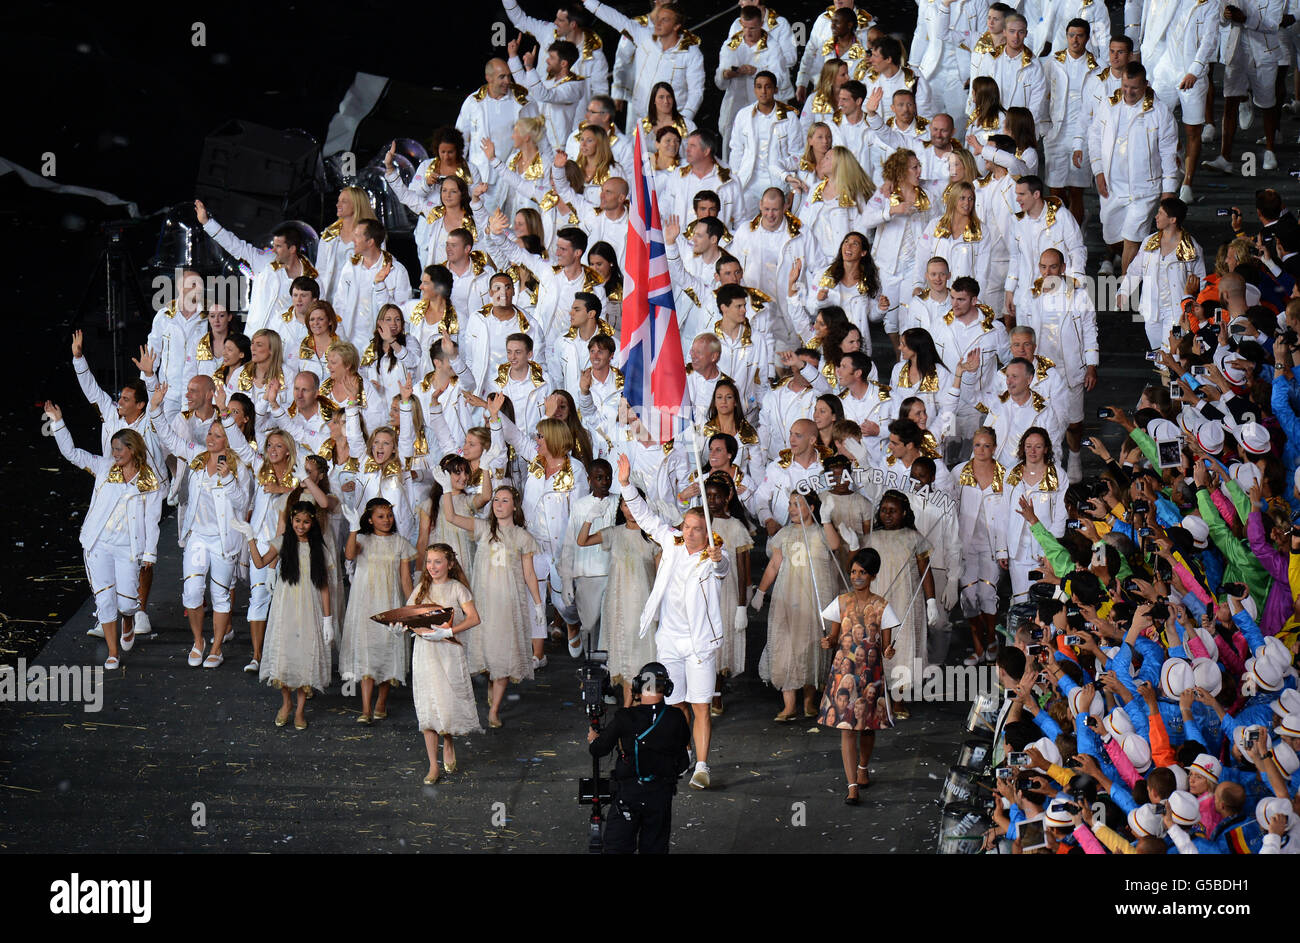 Sir Chris Hoy, de Grande-Bretagne, portant le drapeau britannique, dirige l'équipe lors de la cérémonie d'ouverture des Jeux Olympiques de Londres 2012 au stade olympique de Londres. Banque D'Images